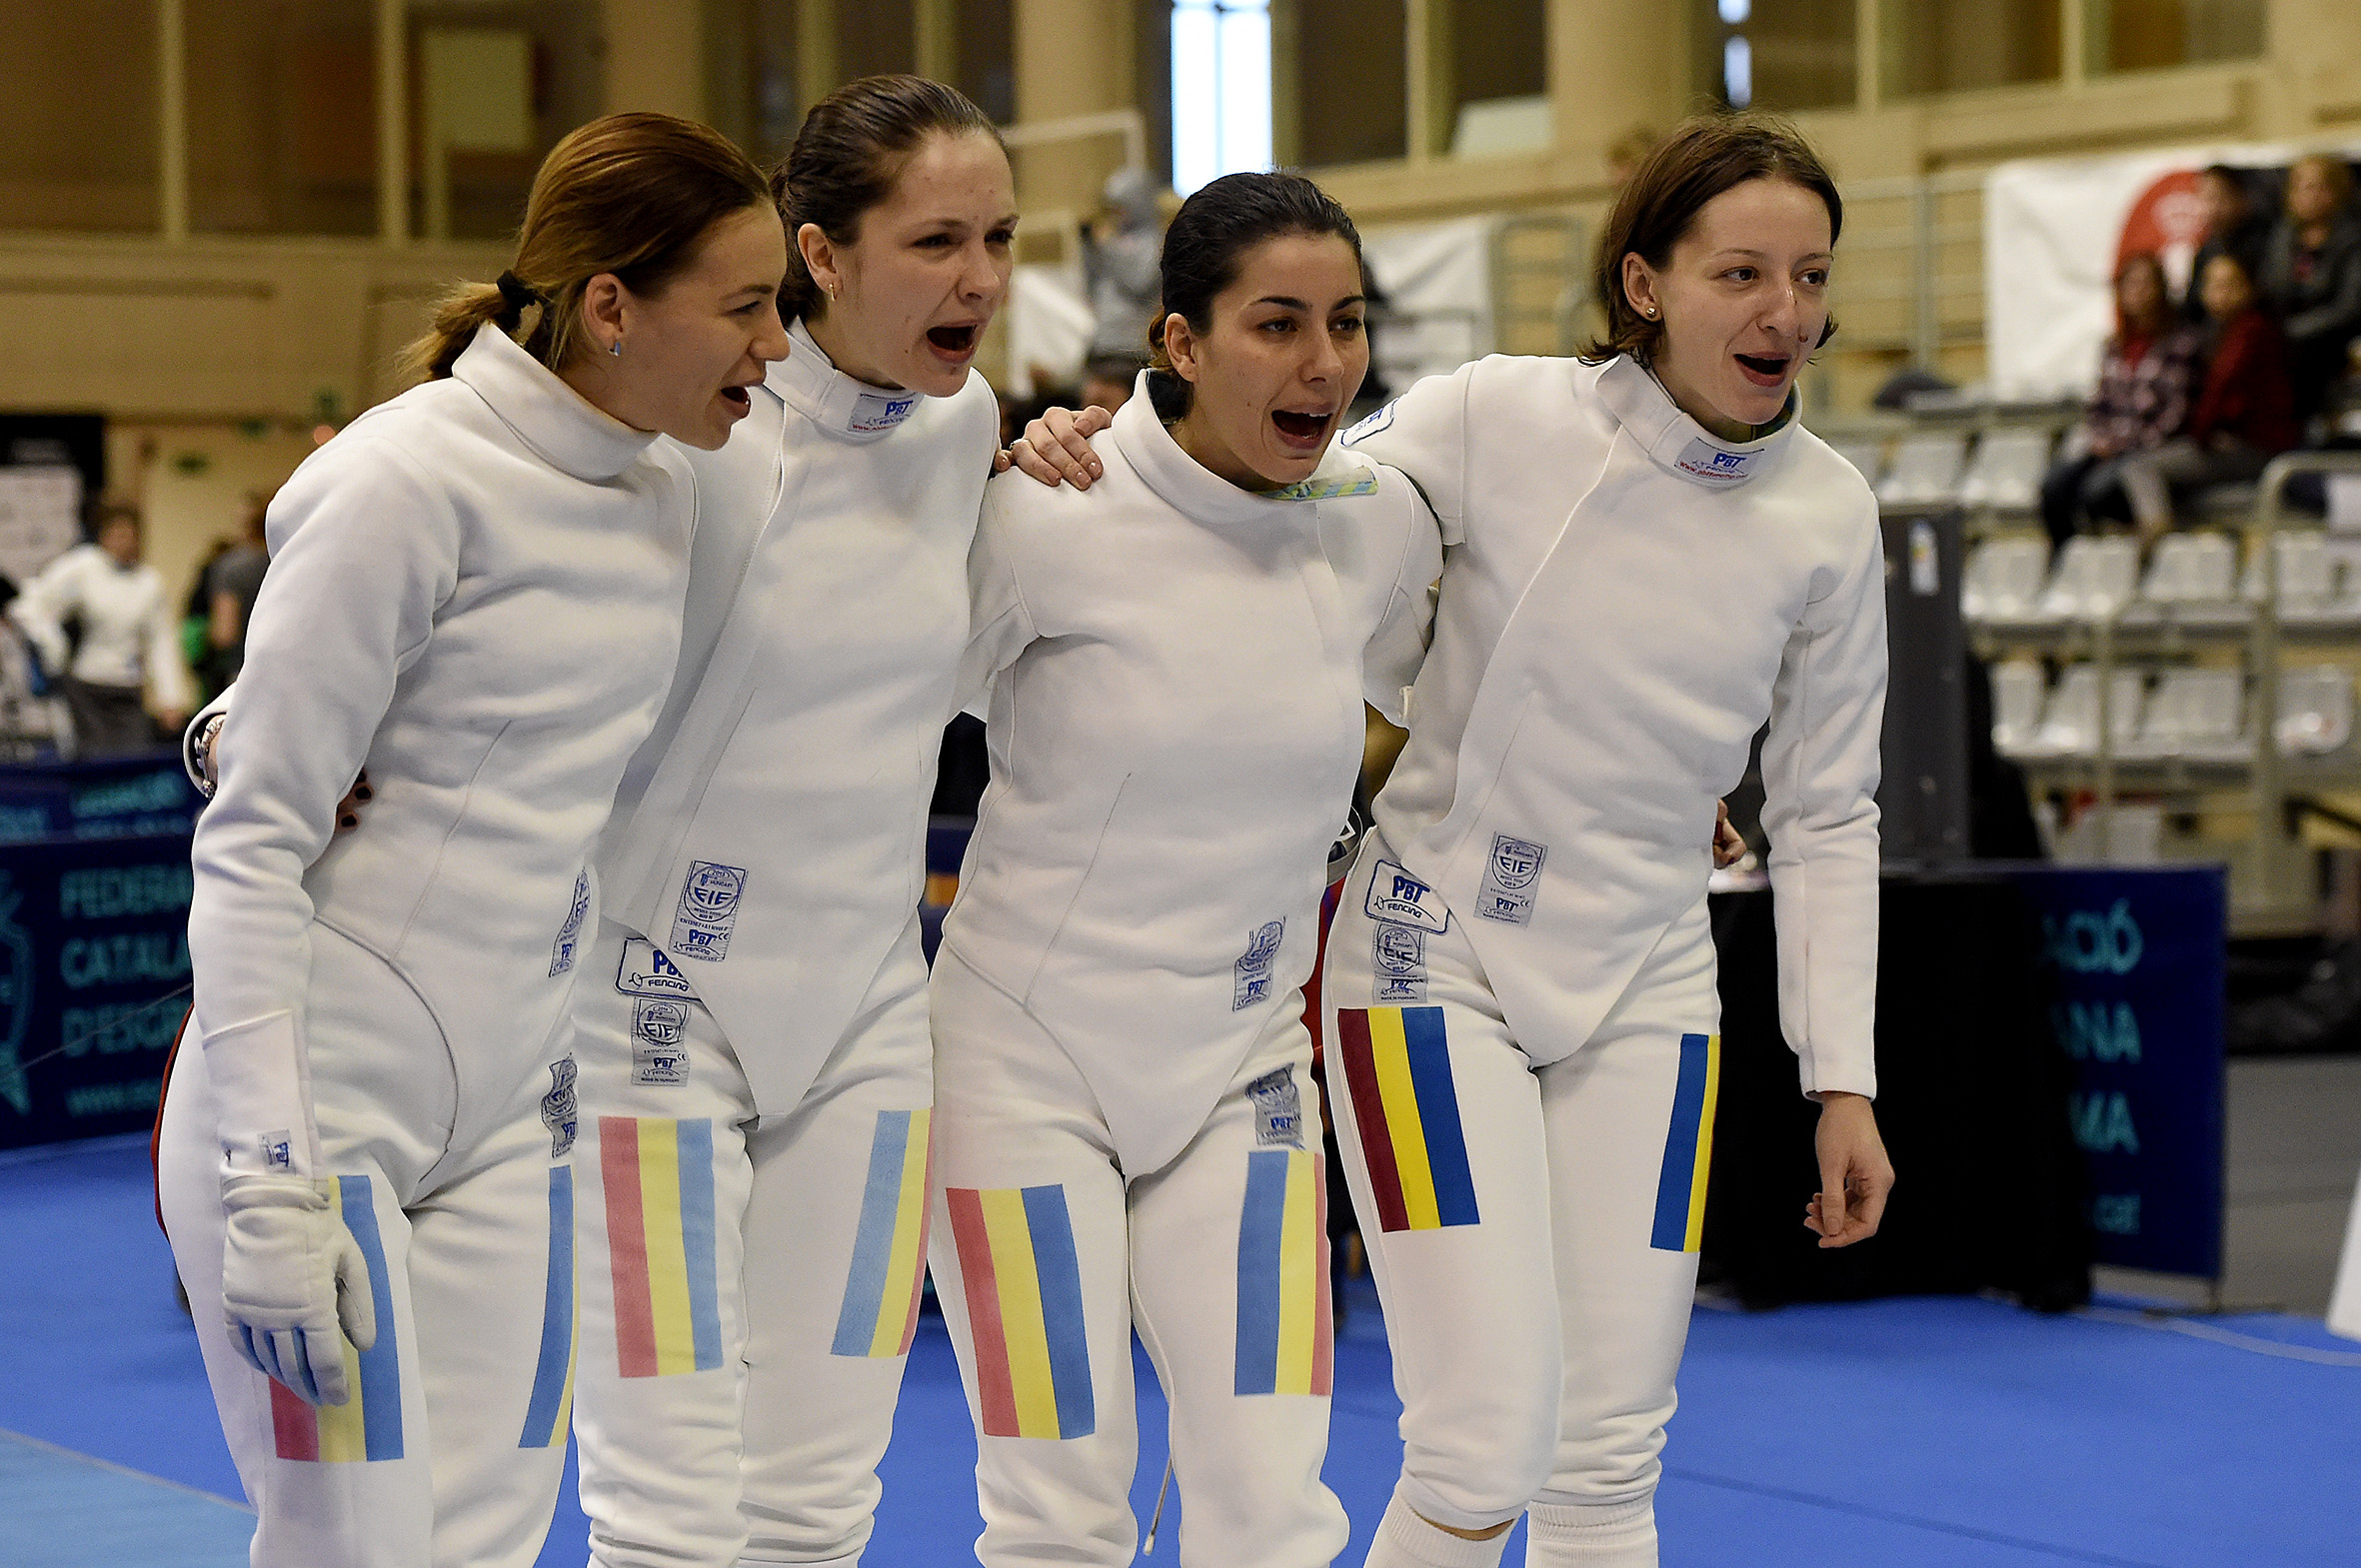 Echipa României se menține pe locul întâi în clasamentul la zi al Cupei Mondiale de spadă seniori feminin